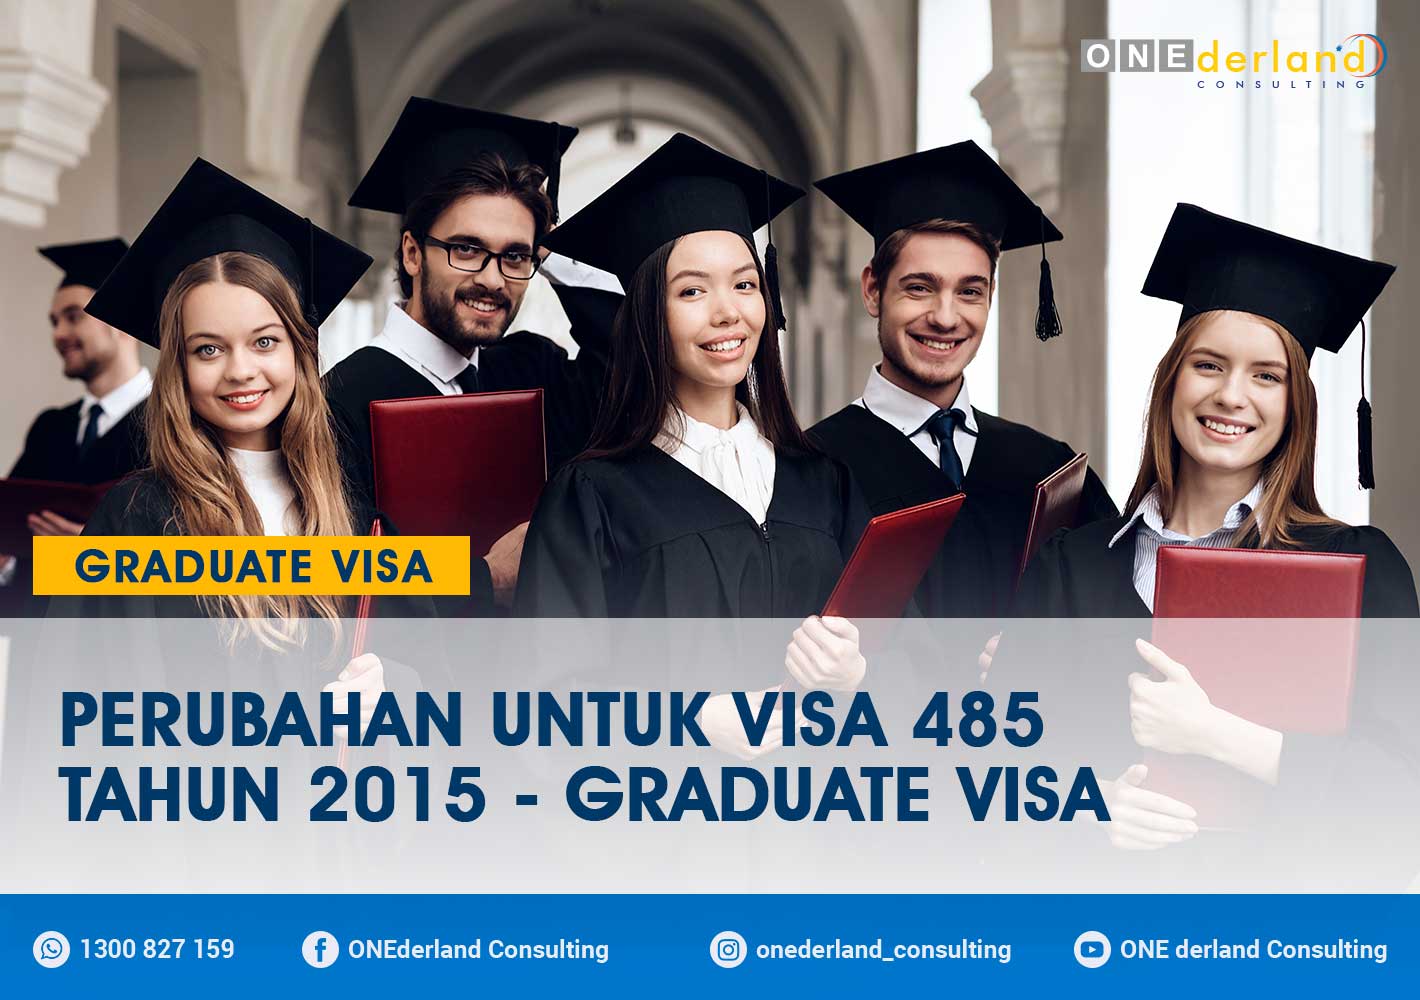 Perubahan Untuk Visa 485 Tahun 2015 - Graduate Visa